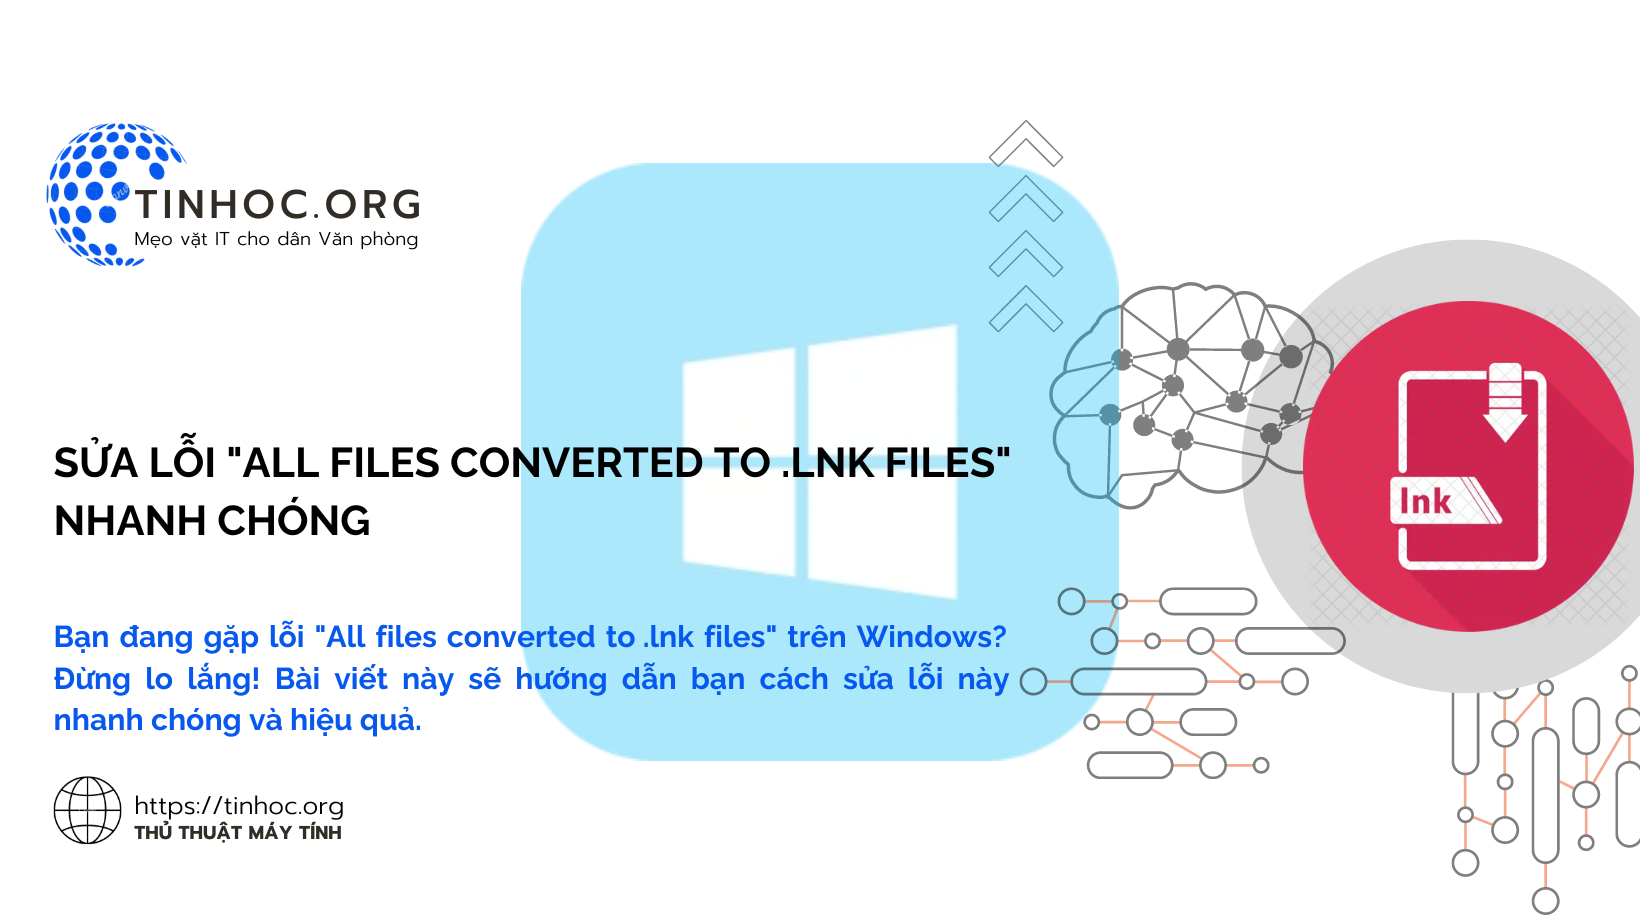 Bạn đang gặp lỗi "All files converted to .lnk files" trên Windows? Đừng lo lắng! Bài viết này sẽ hướng dẫn bạn cách sửa lỗi này nhanh chóng và hiệu quả.